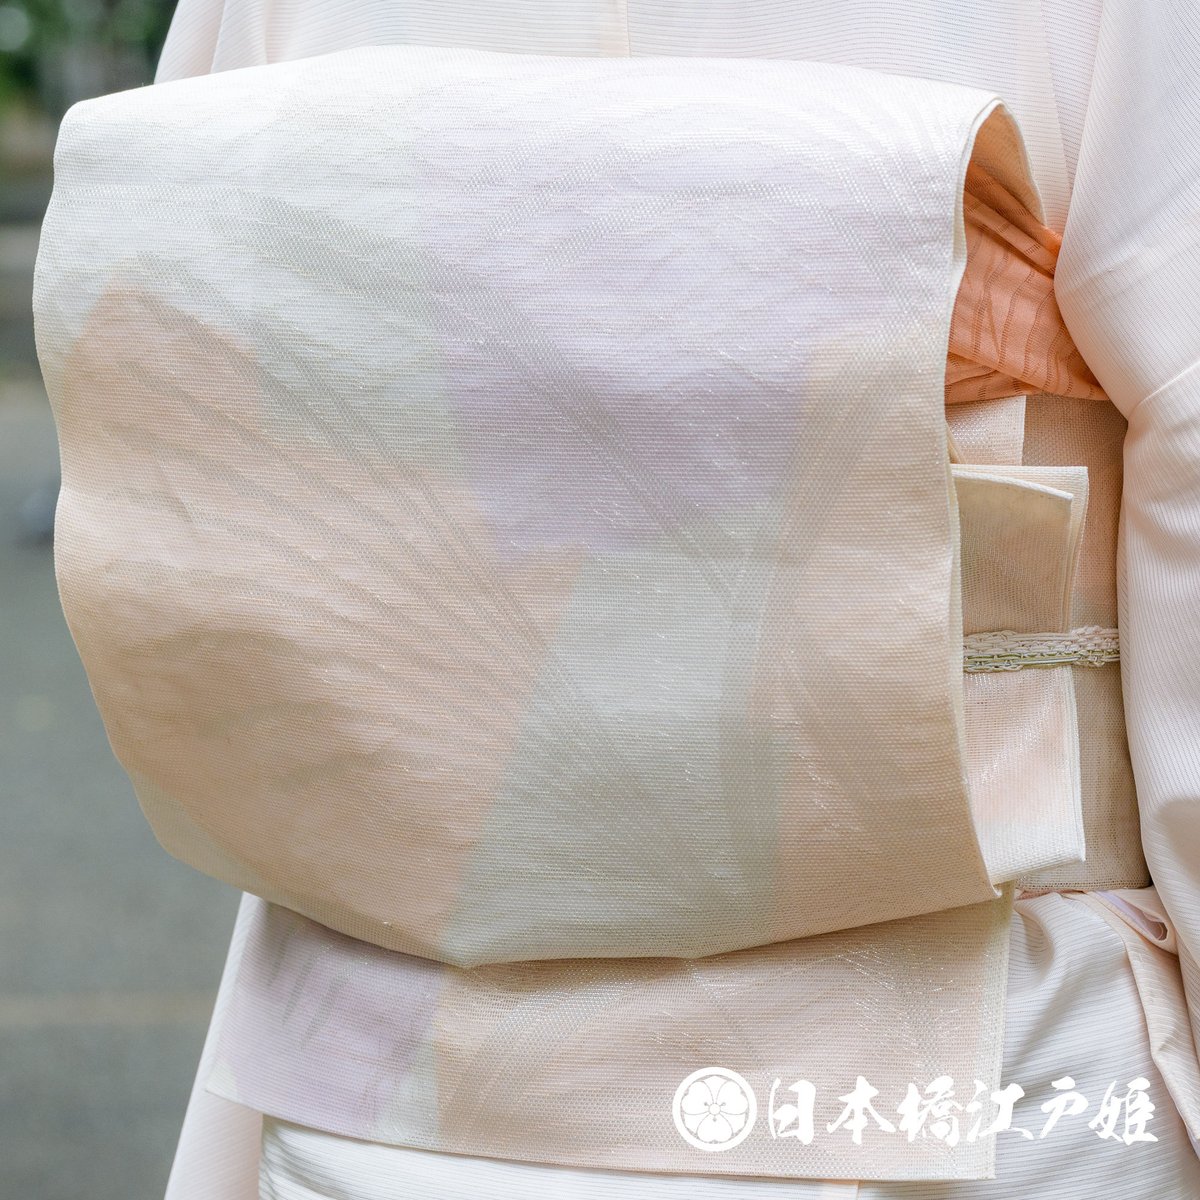 アクロンさま専用 正絹 袋帯  シルバーグレー  色紙文  亀甲  七宝  六通帯